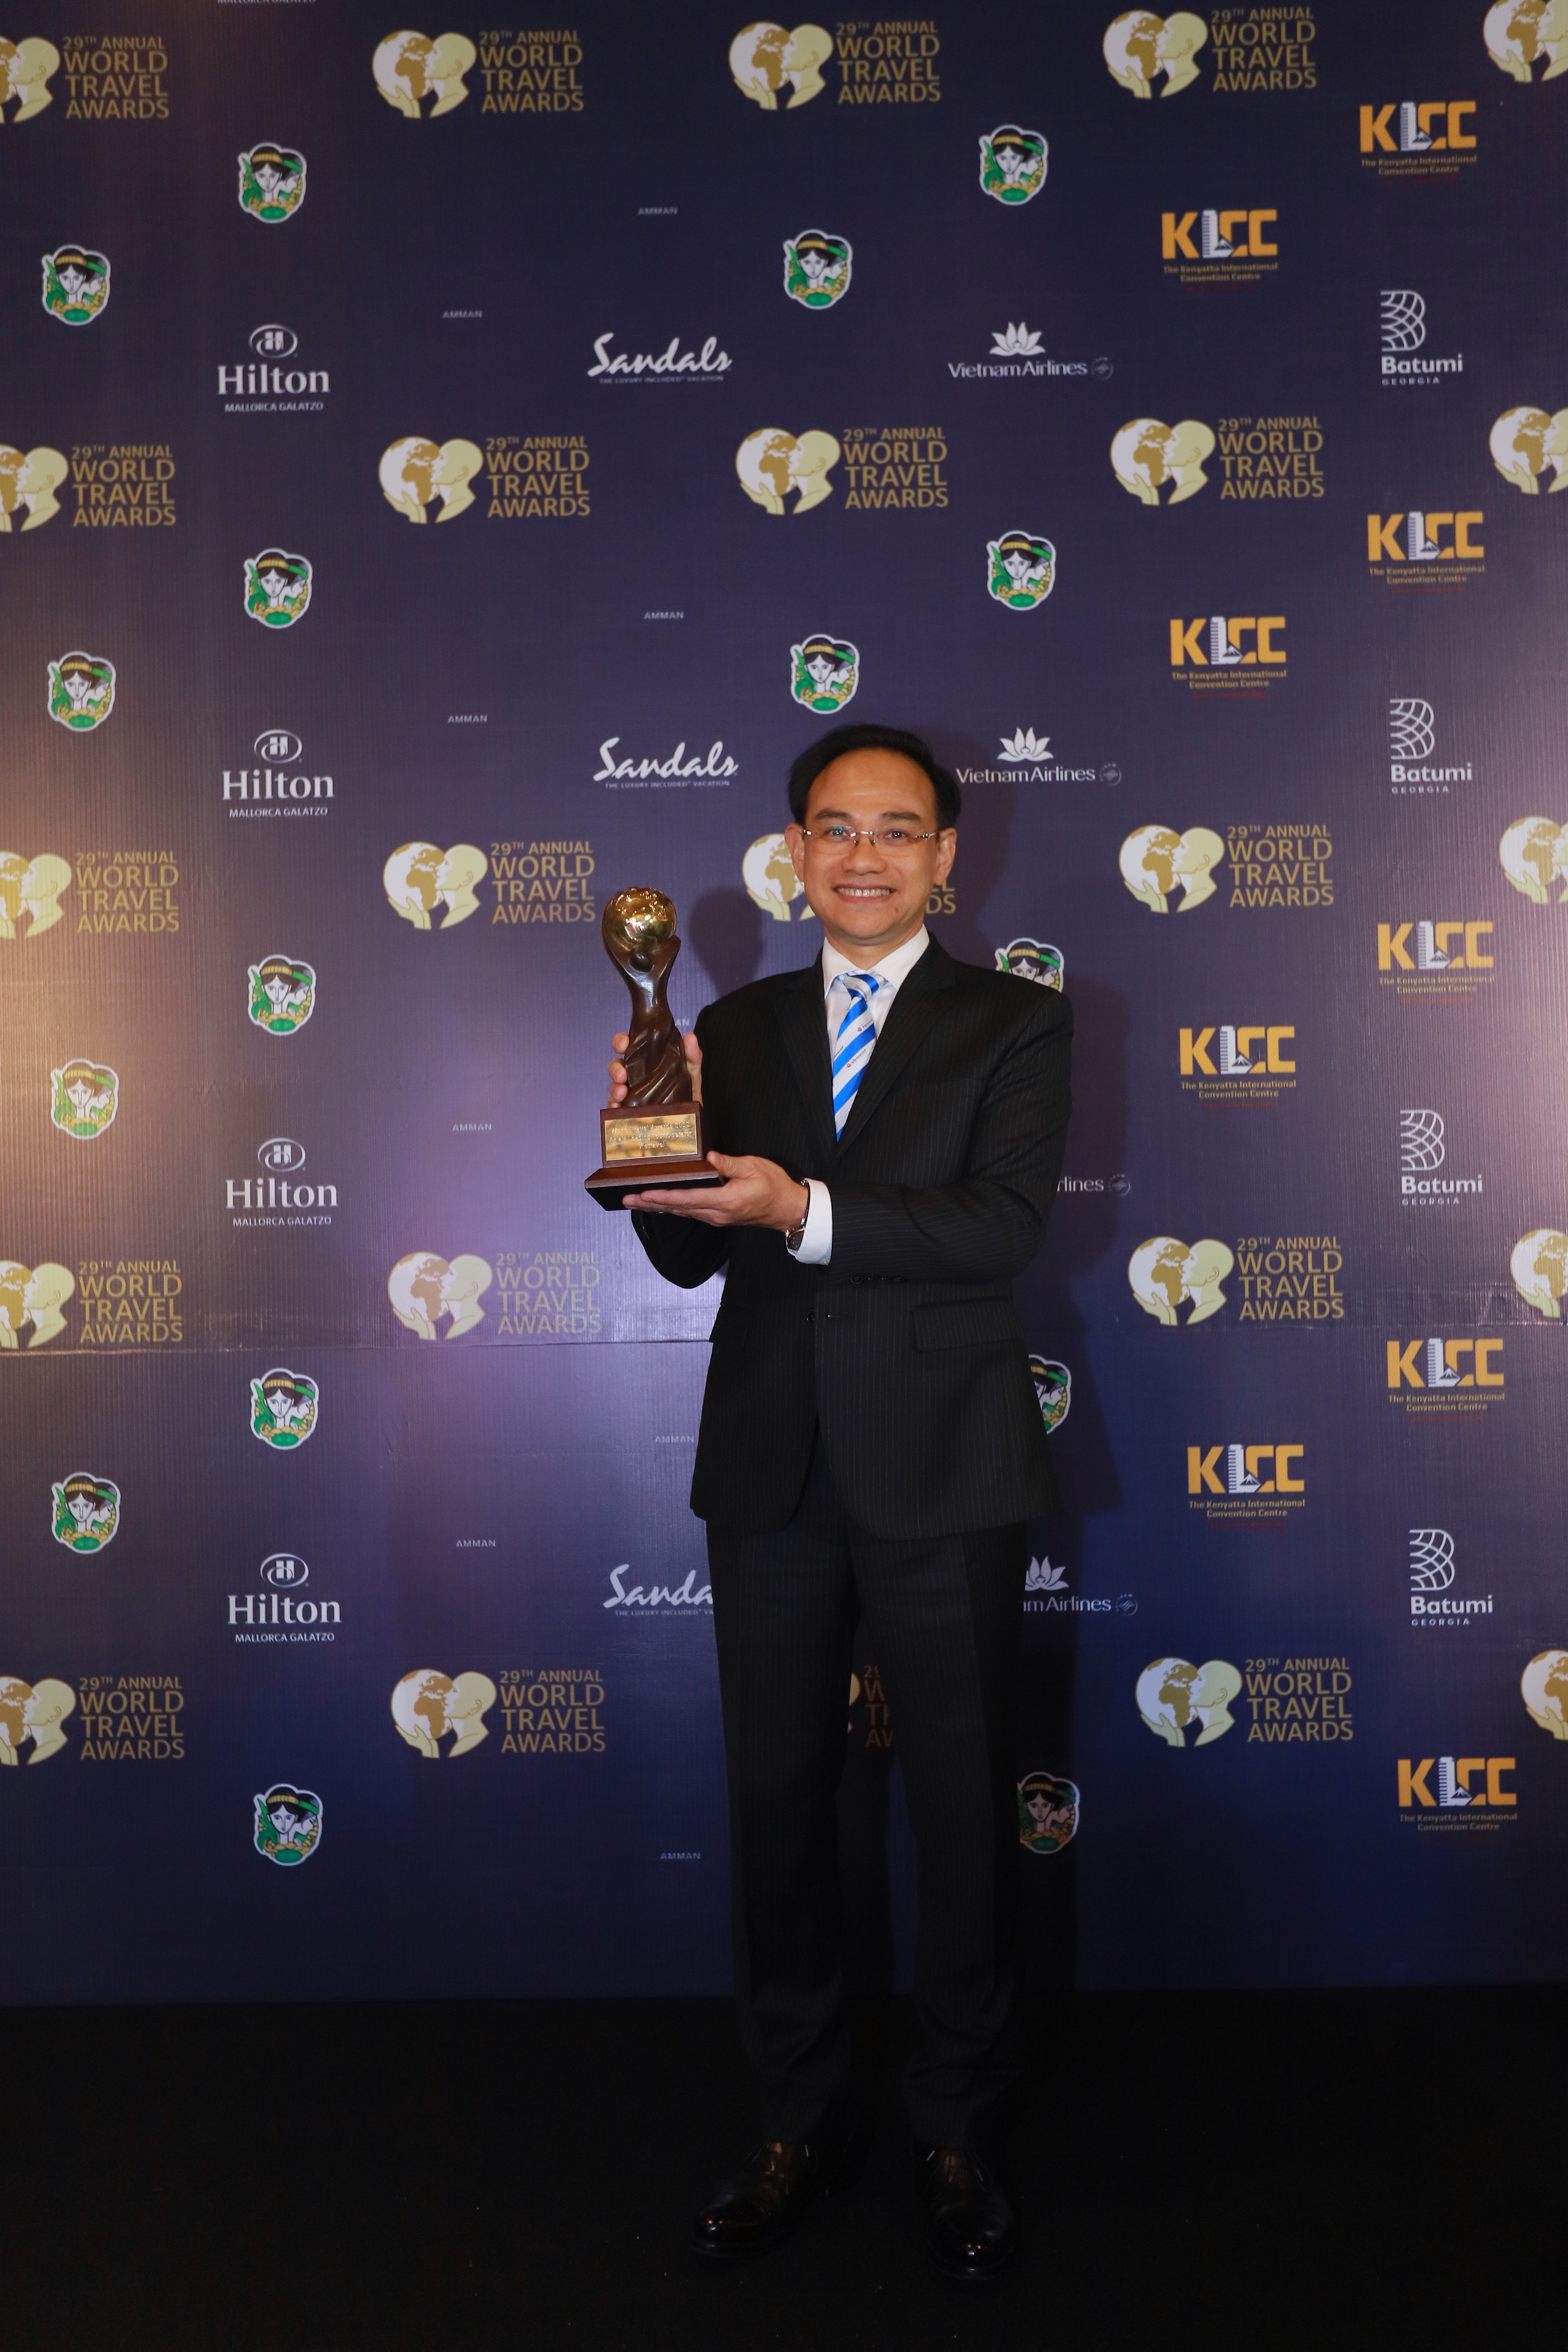 Vietravel ghi đậm dấu ấn tại Giải thưởng Du lịch Thế giới – World Travel Awards với chiến thắng lần thứ 10 liên tiếp